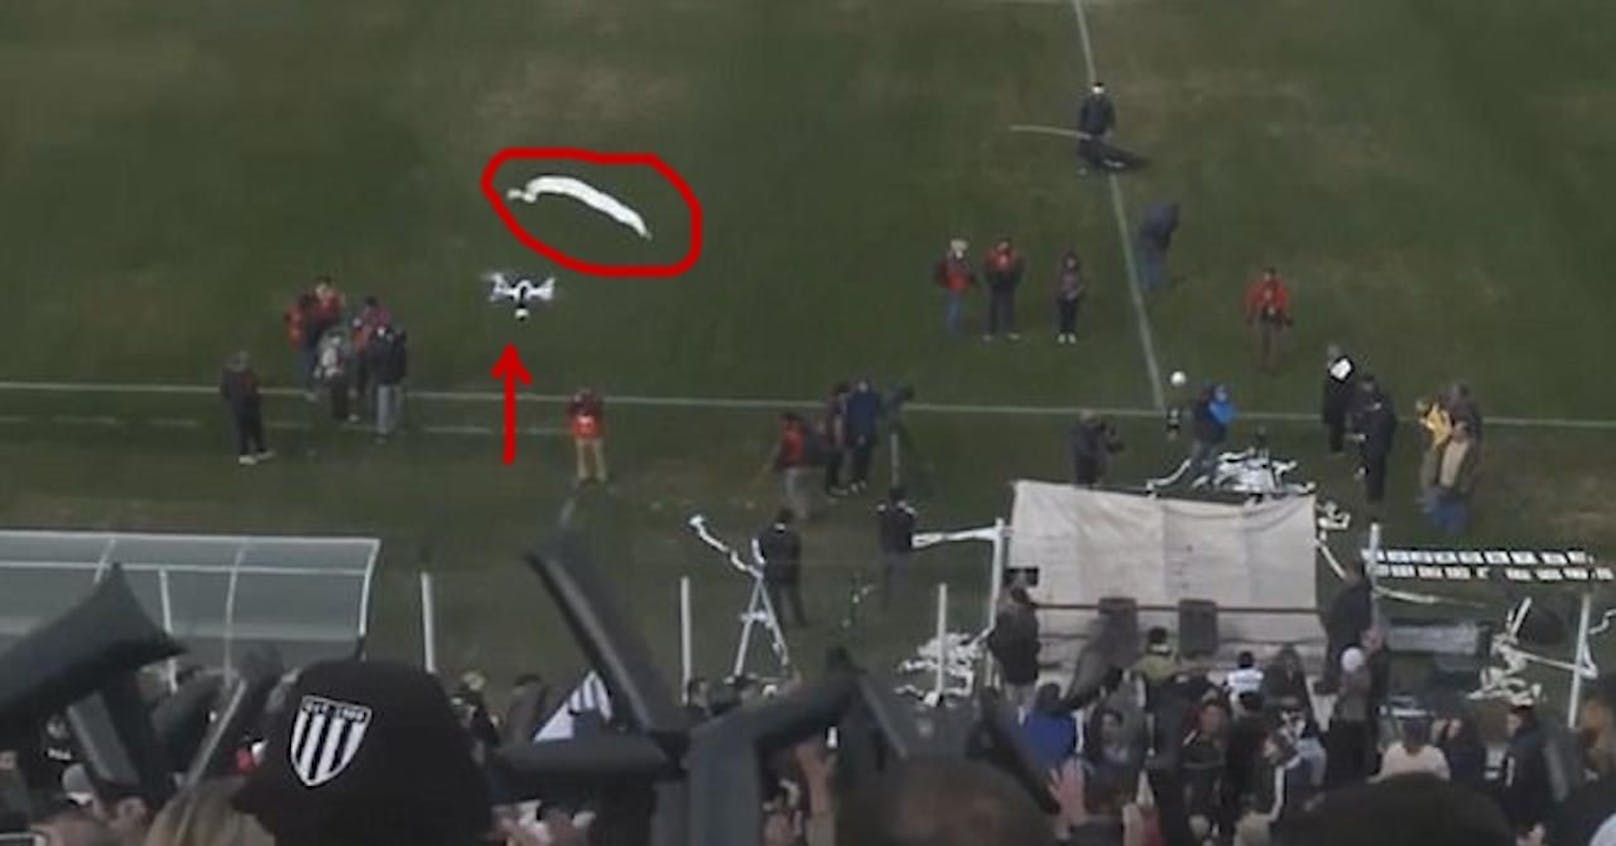 Gut gezielt: Der argentinische Fußball-Anhänger hat eine Rolle WC-Papier geworfen (Kreis), gleich wird sie die Drohne (Pfeil) vom Himmel holen!